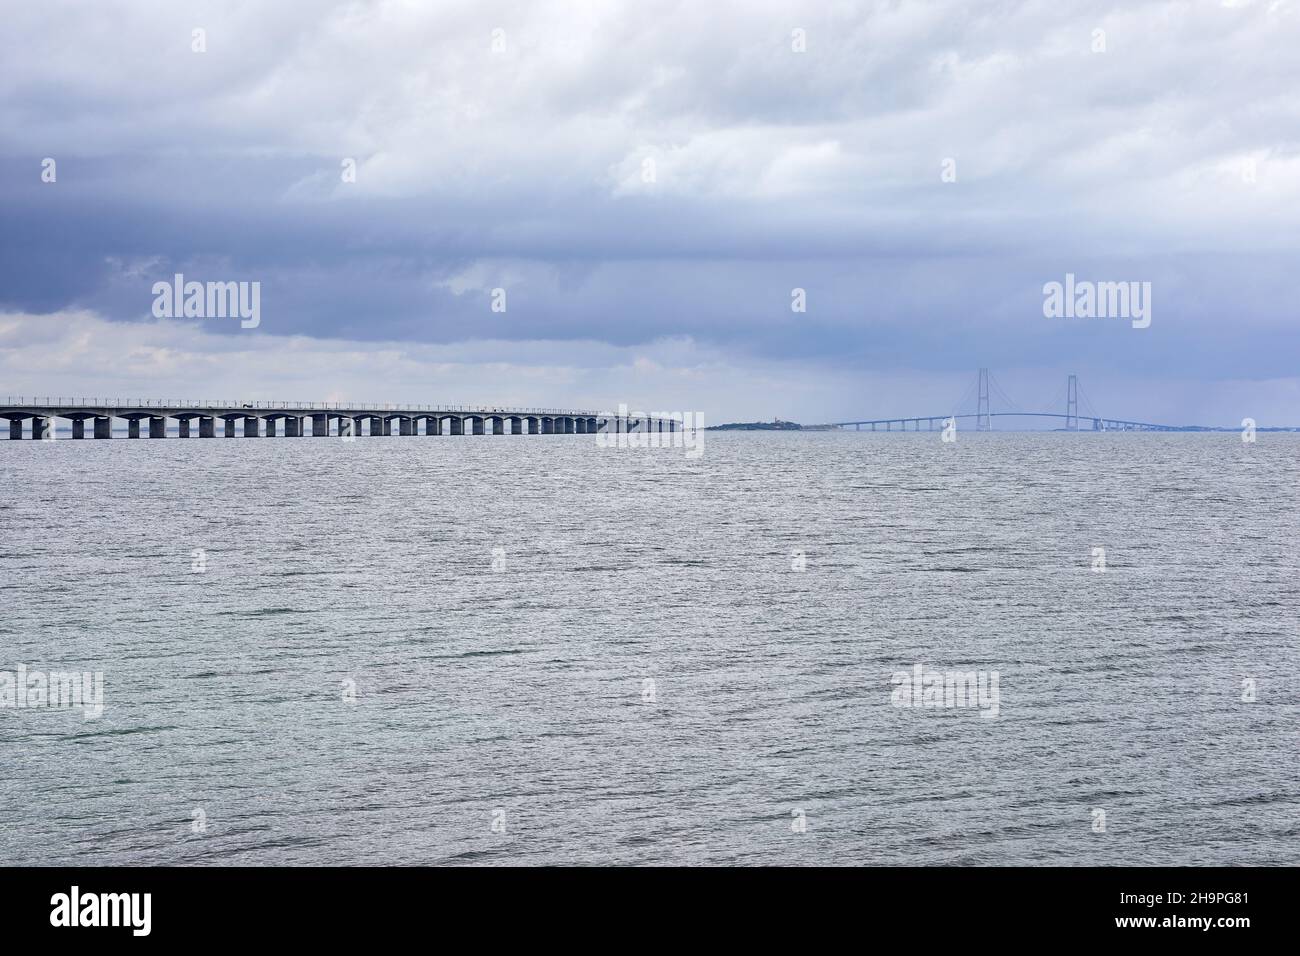 Der Great Fixed Link (Storebæltsbroen), eine feste Verbindung über Meerenge des Großen Belt den dänischen Inseln Seeland und Fünen; Dänemark Stockfotografie - Alamy